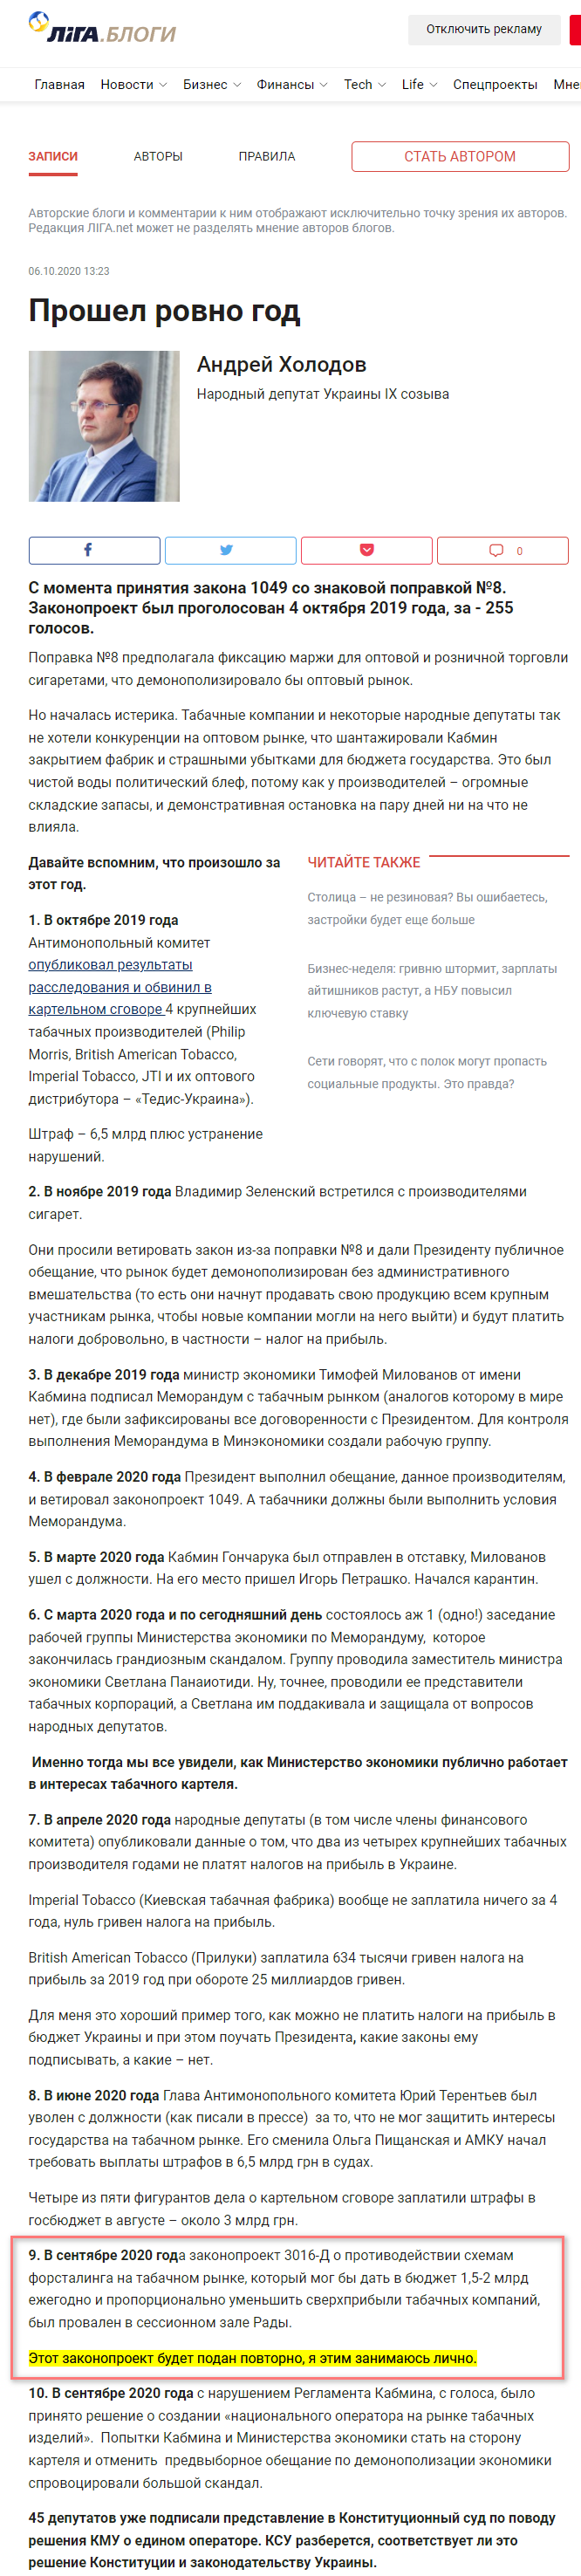 https://blog.liga.net/user/akholodov/article/38080